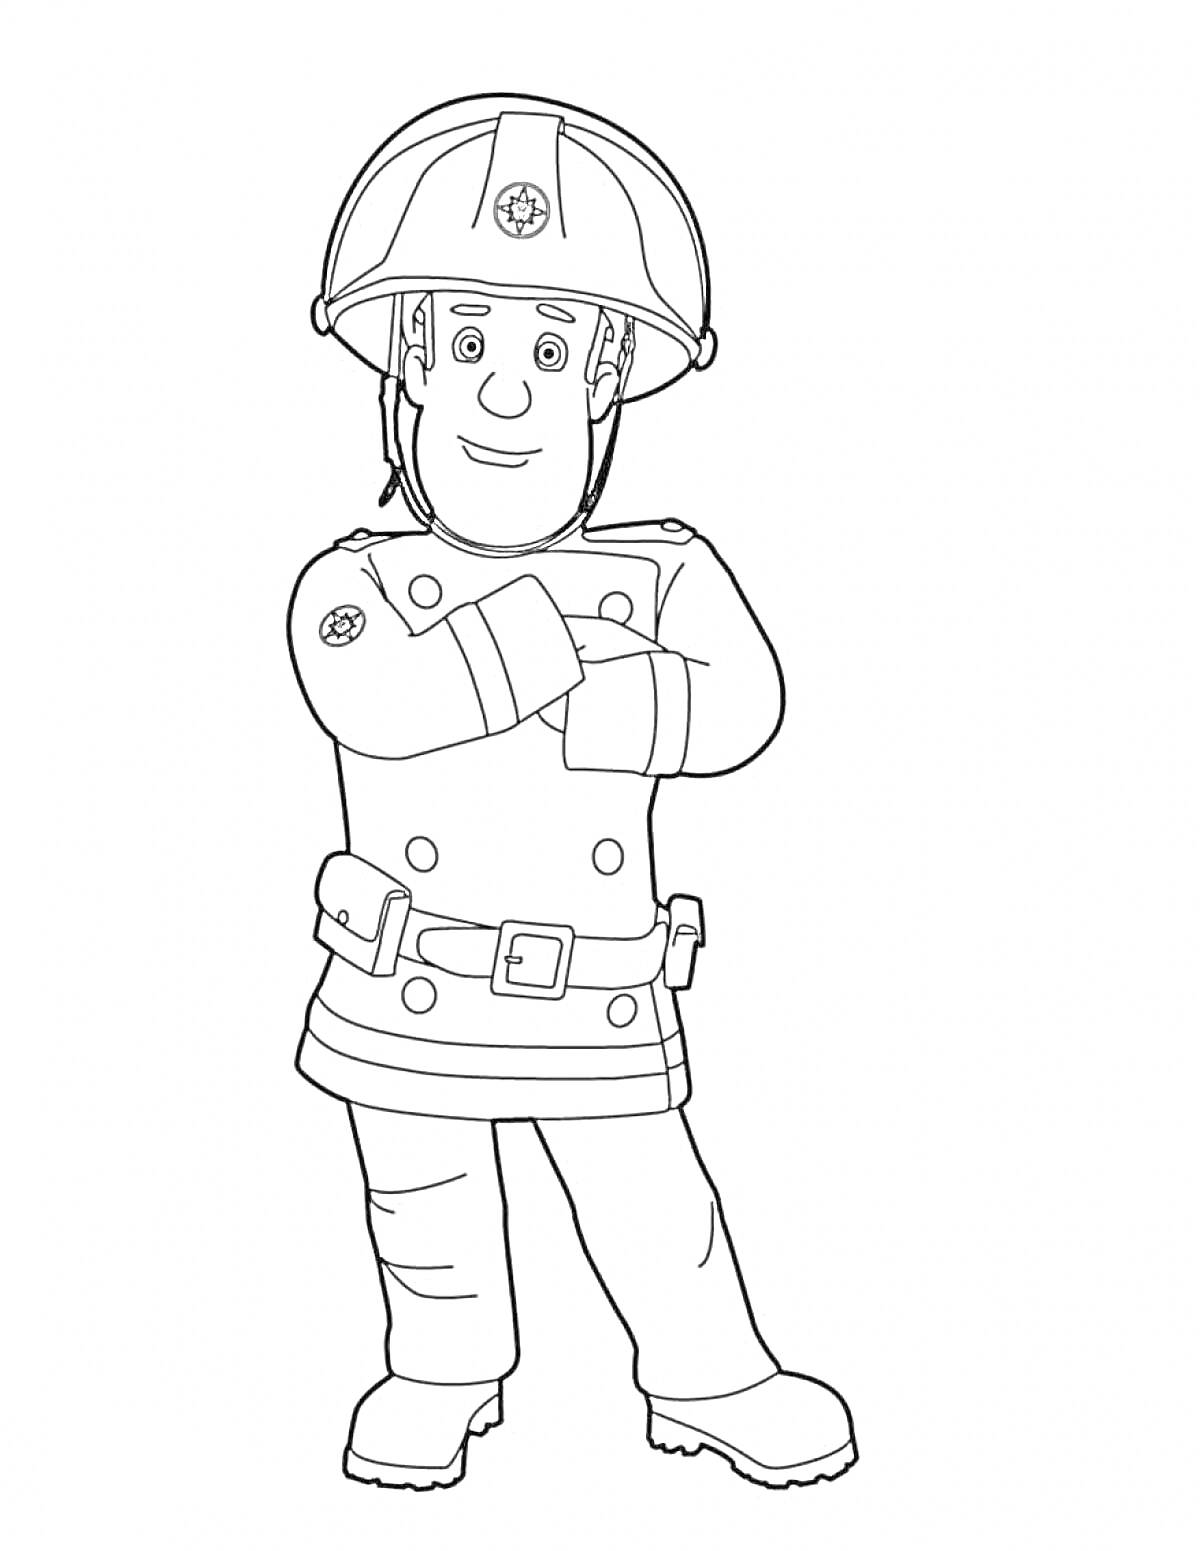 Раскраска Пожарный в каске и форме с ремнём и пуговицами, скрестивший руки на груди